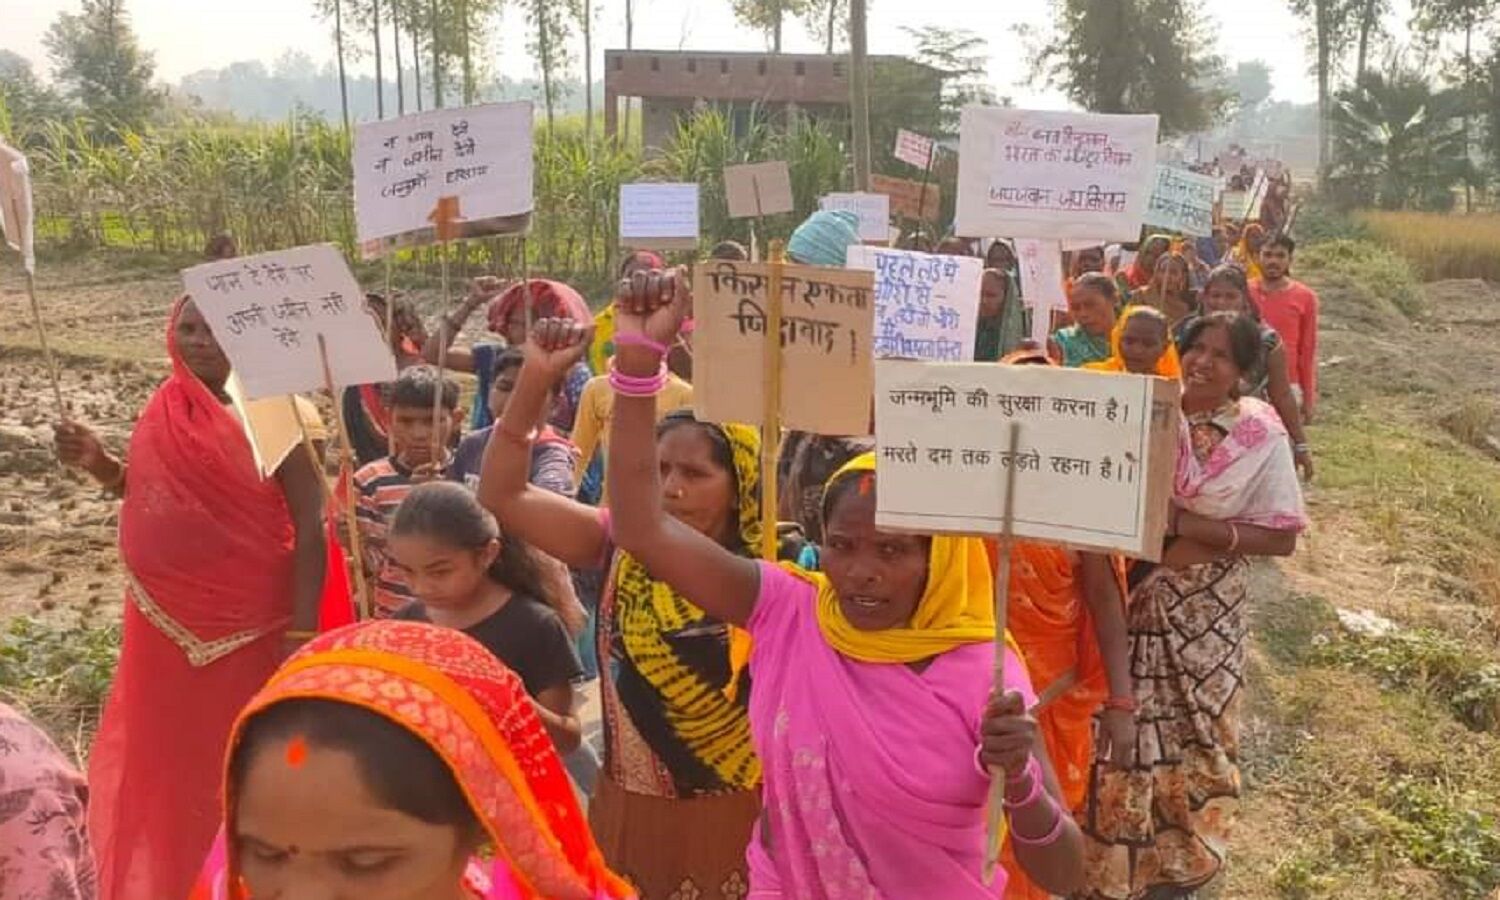 आजमगढ़ एयरपोर्ट के खिलाफ खिरिया बाग संघर्ष के 2 महीने पूरे, जुलूस निकालकर छात्र-युवा किसान-मजदूर पंचायत आयोजित